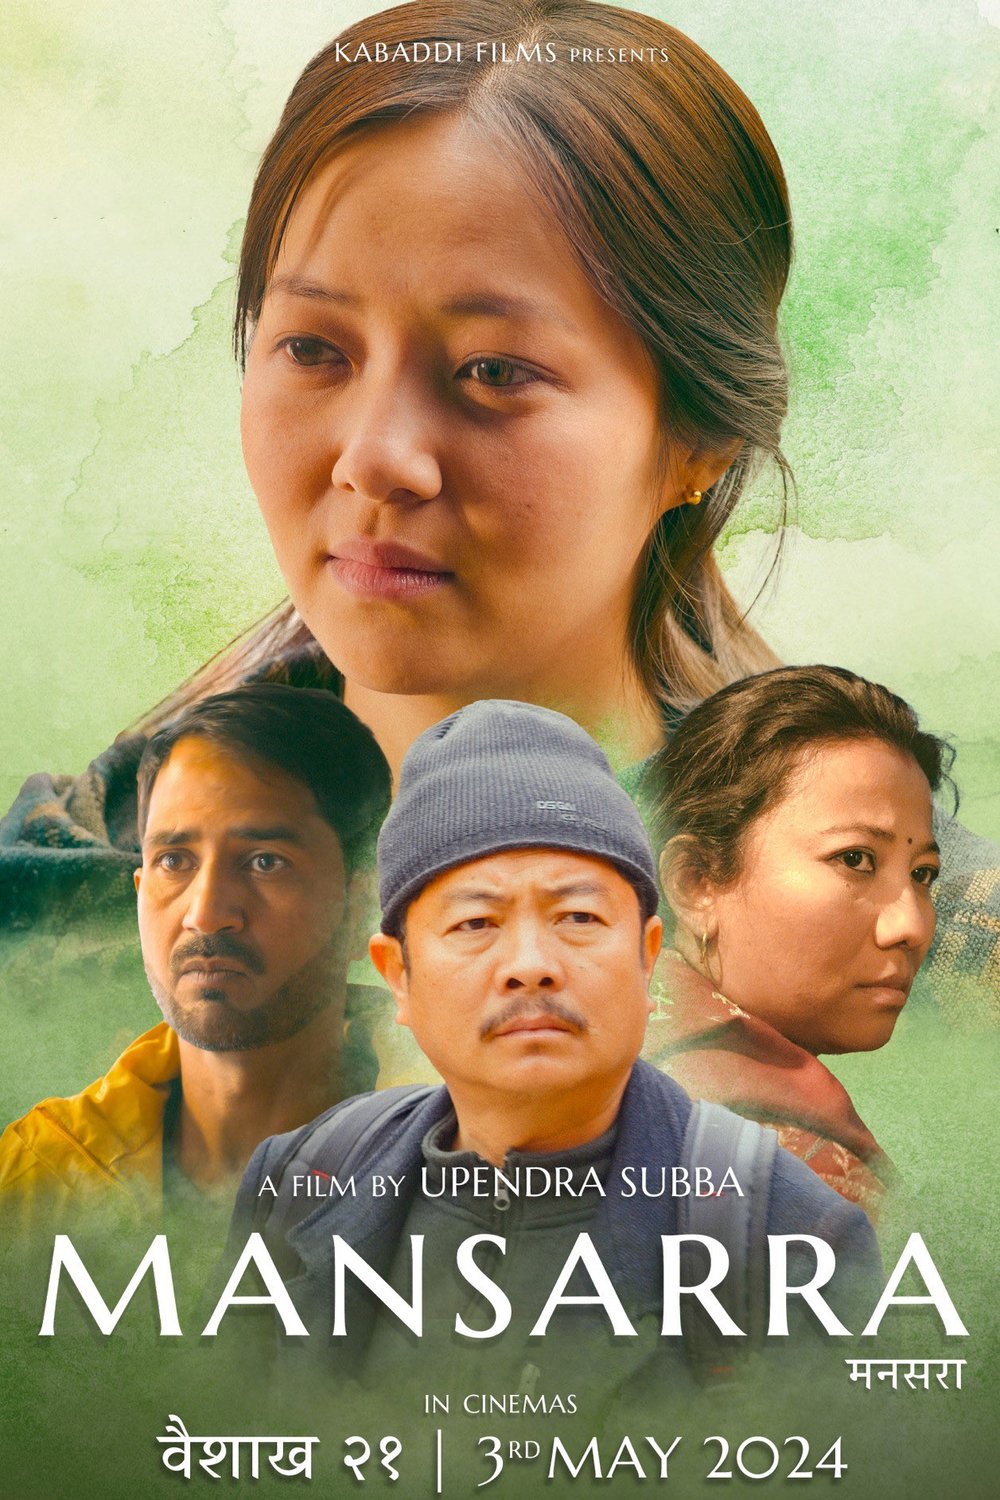 L'affiche originale du film Mansarra en Népalais